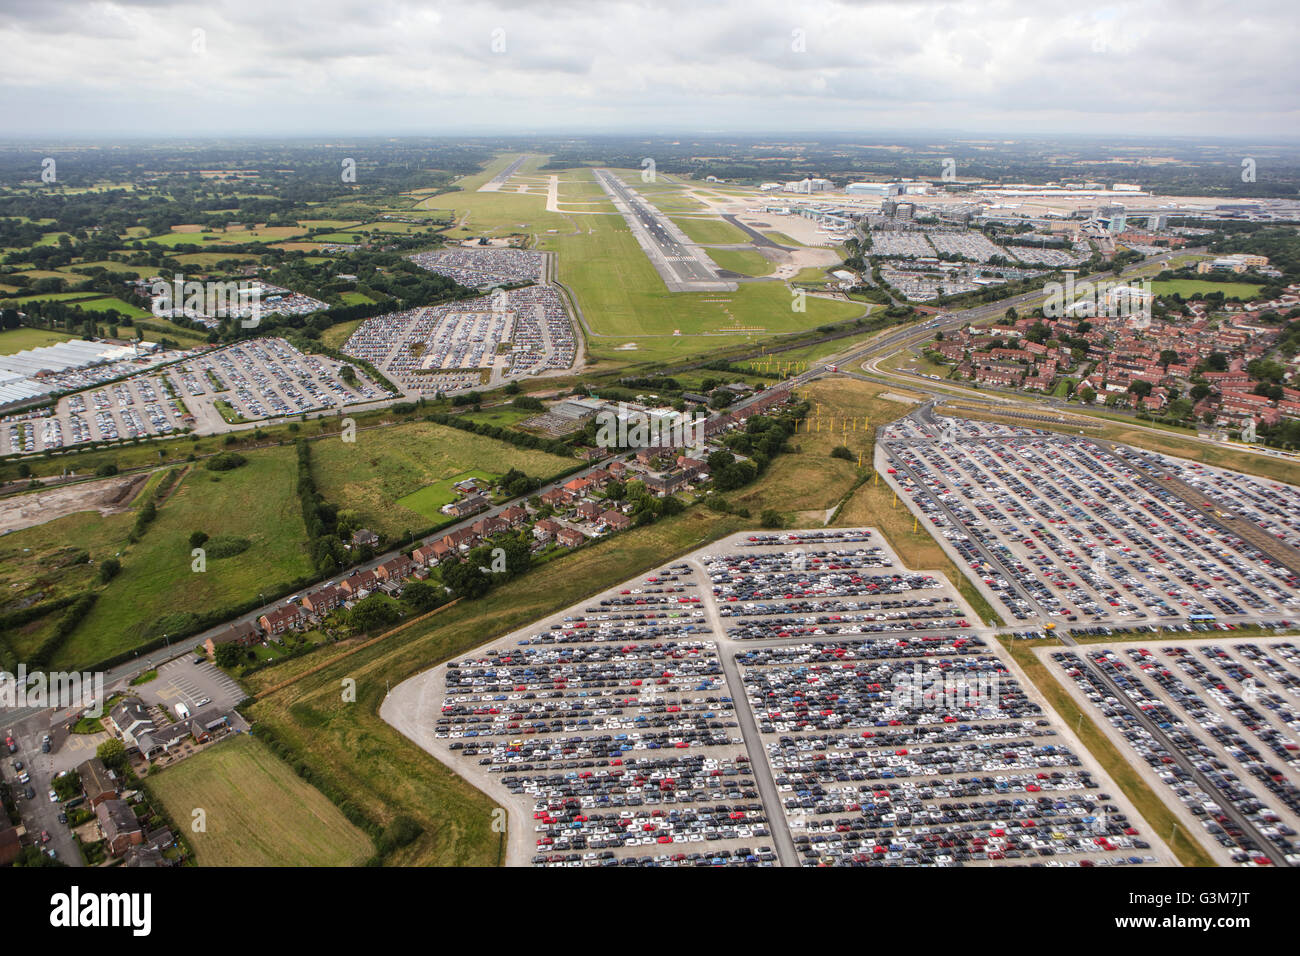 Una vista aérea del aeropuerto internacional de Manchester Foto de stock